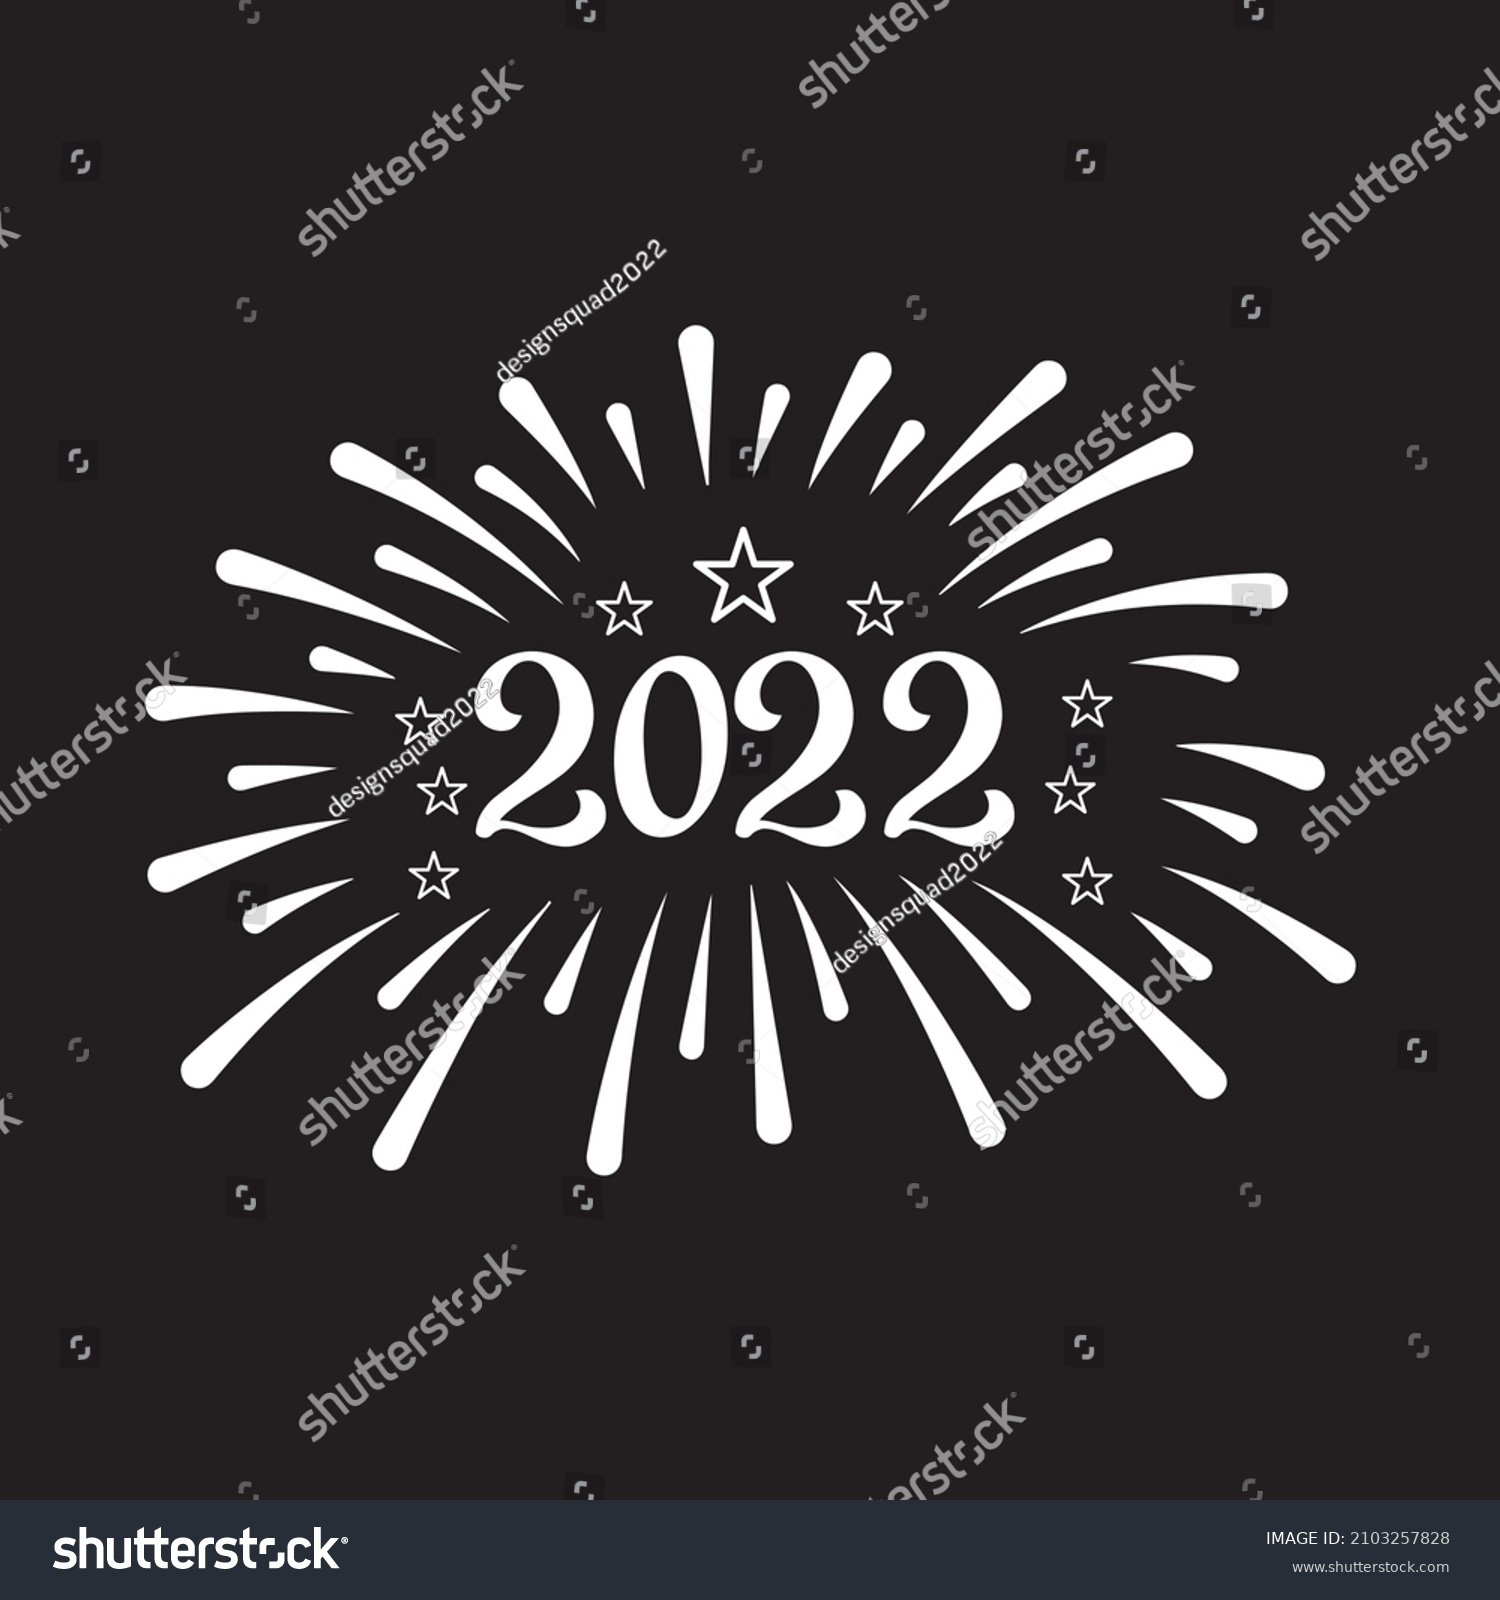 SVG of 2022 svg design vector file svg